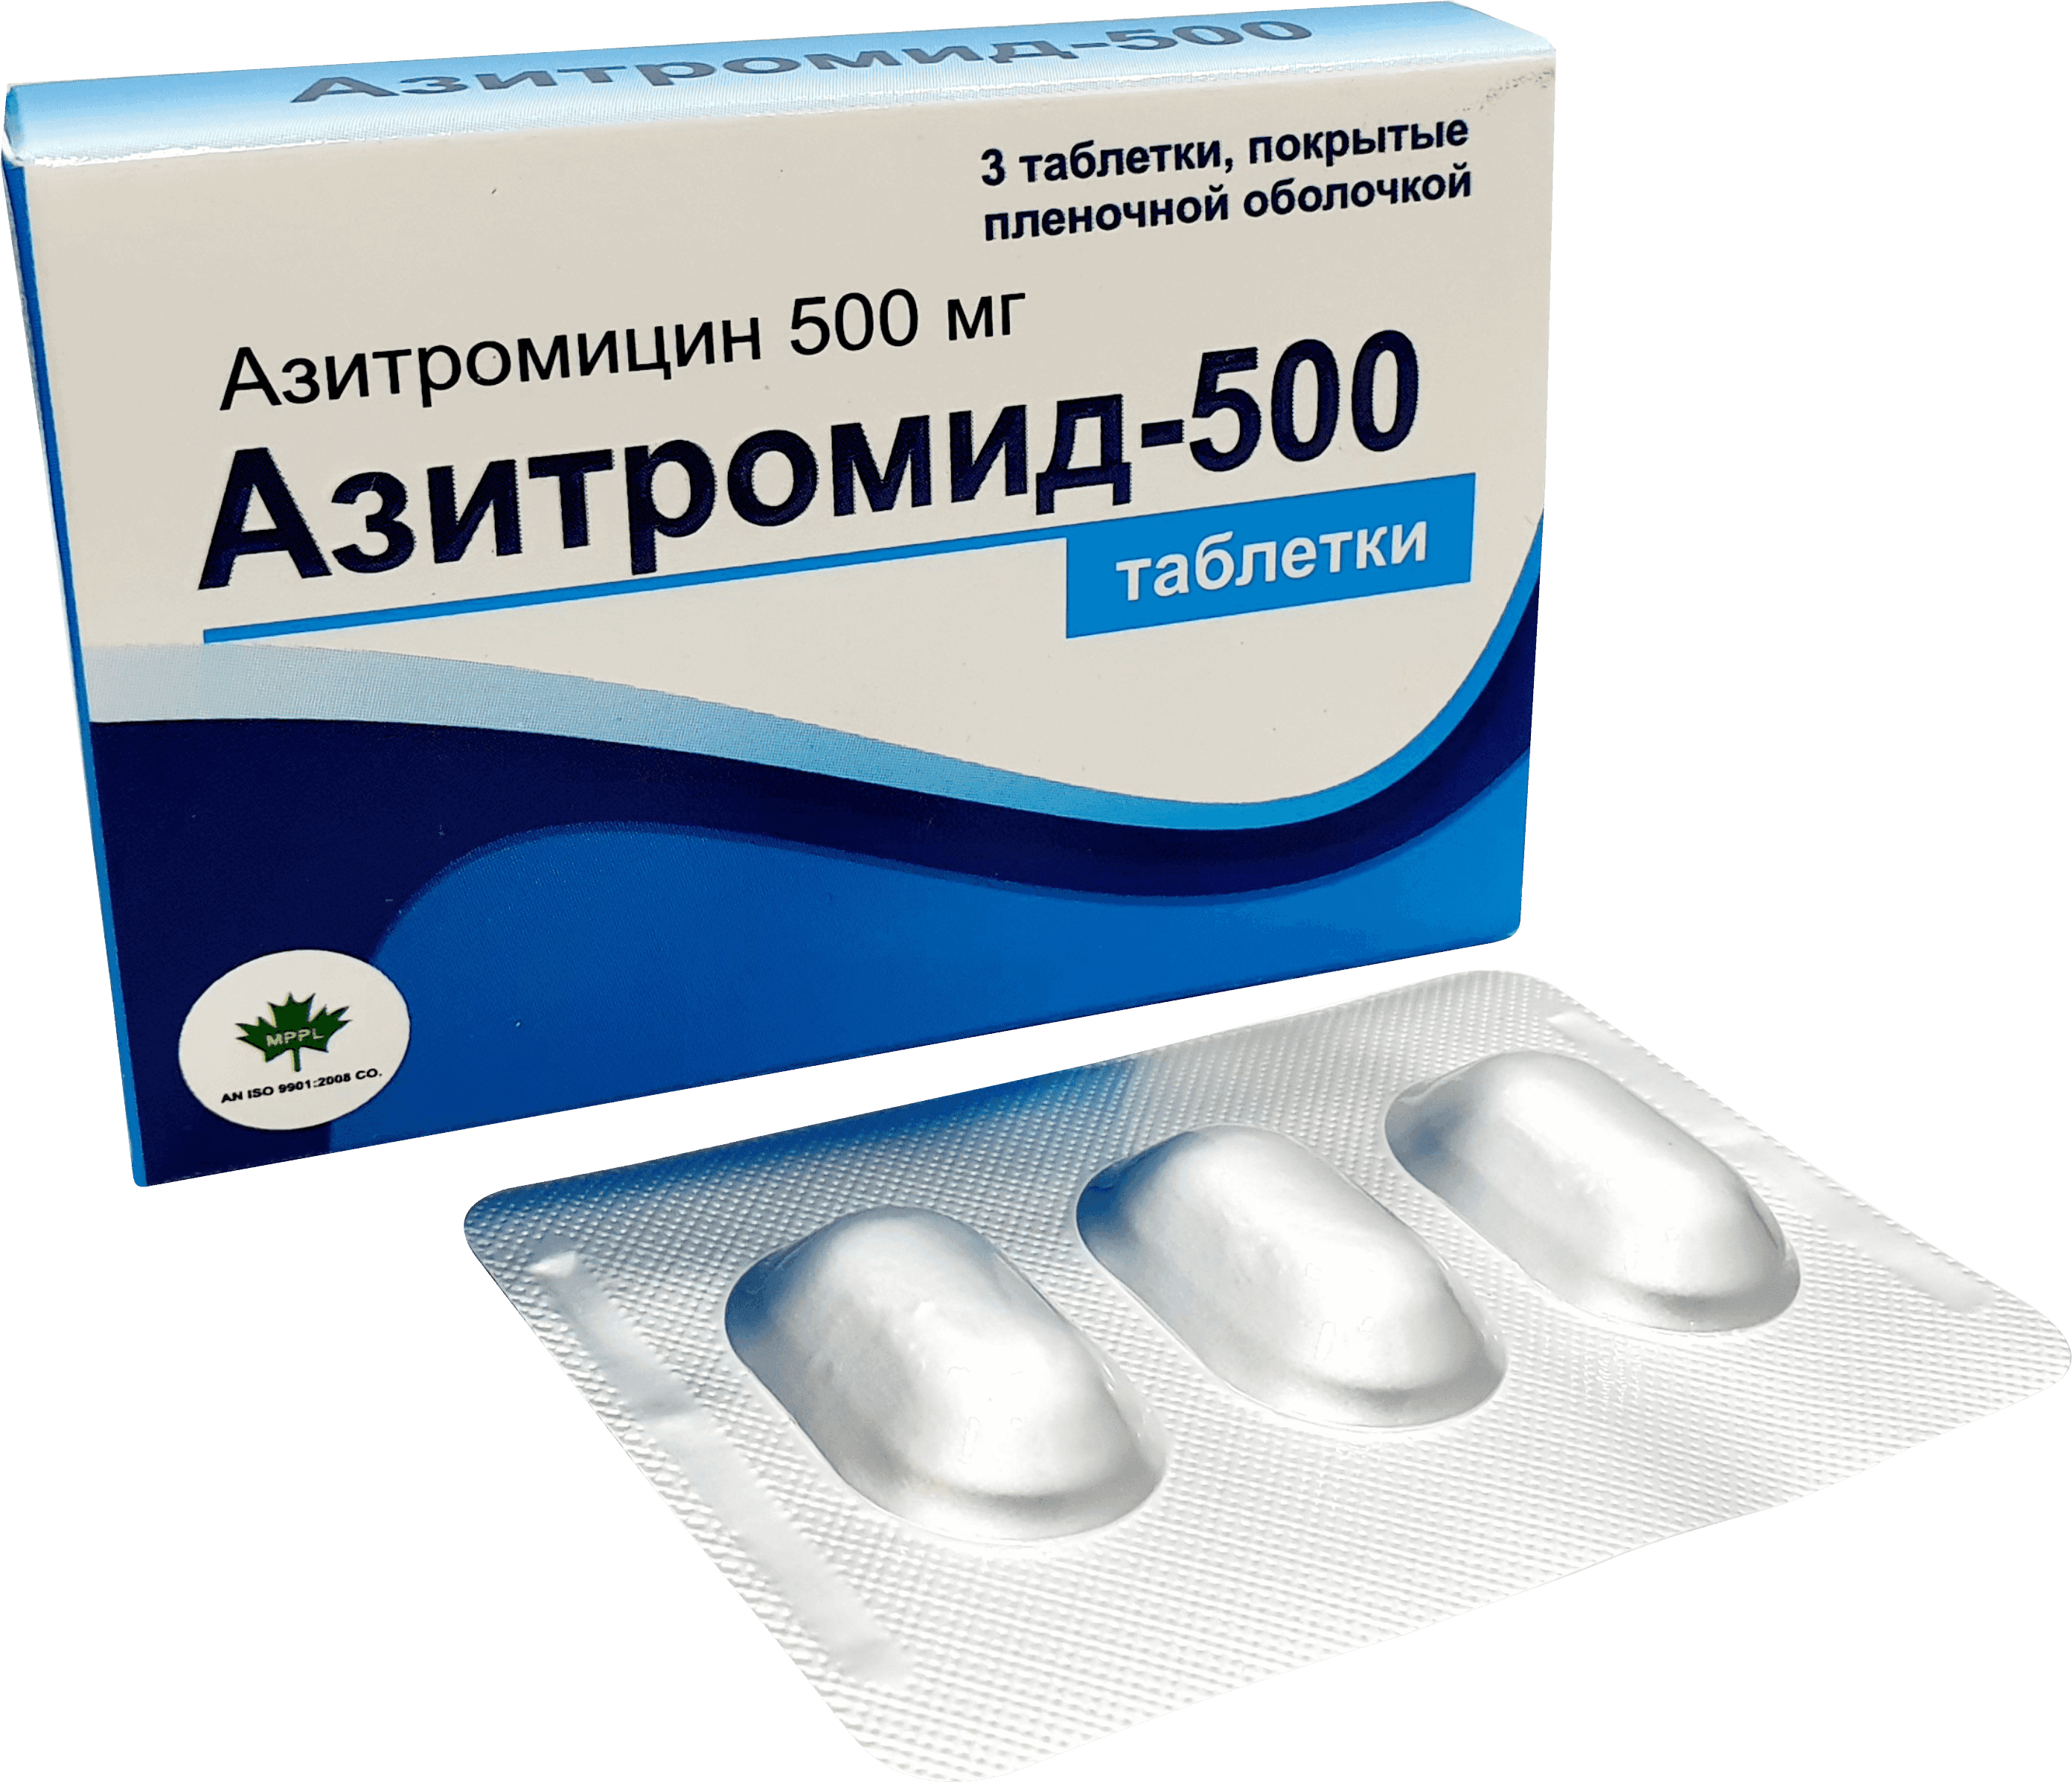 АЗИТРОМИД 500 N2